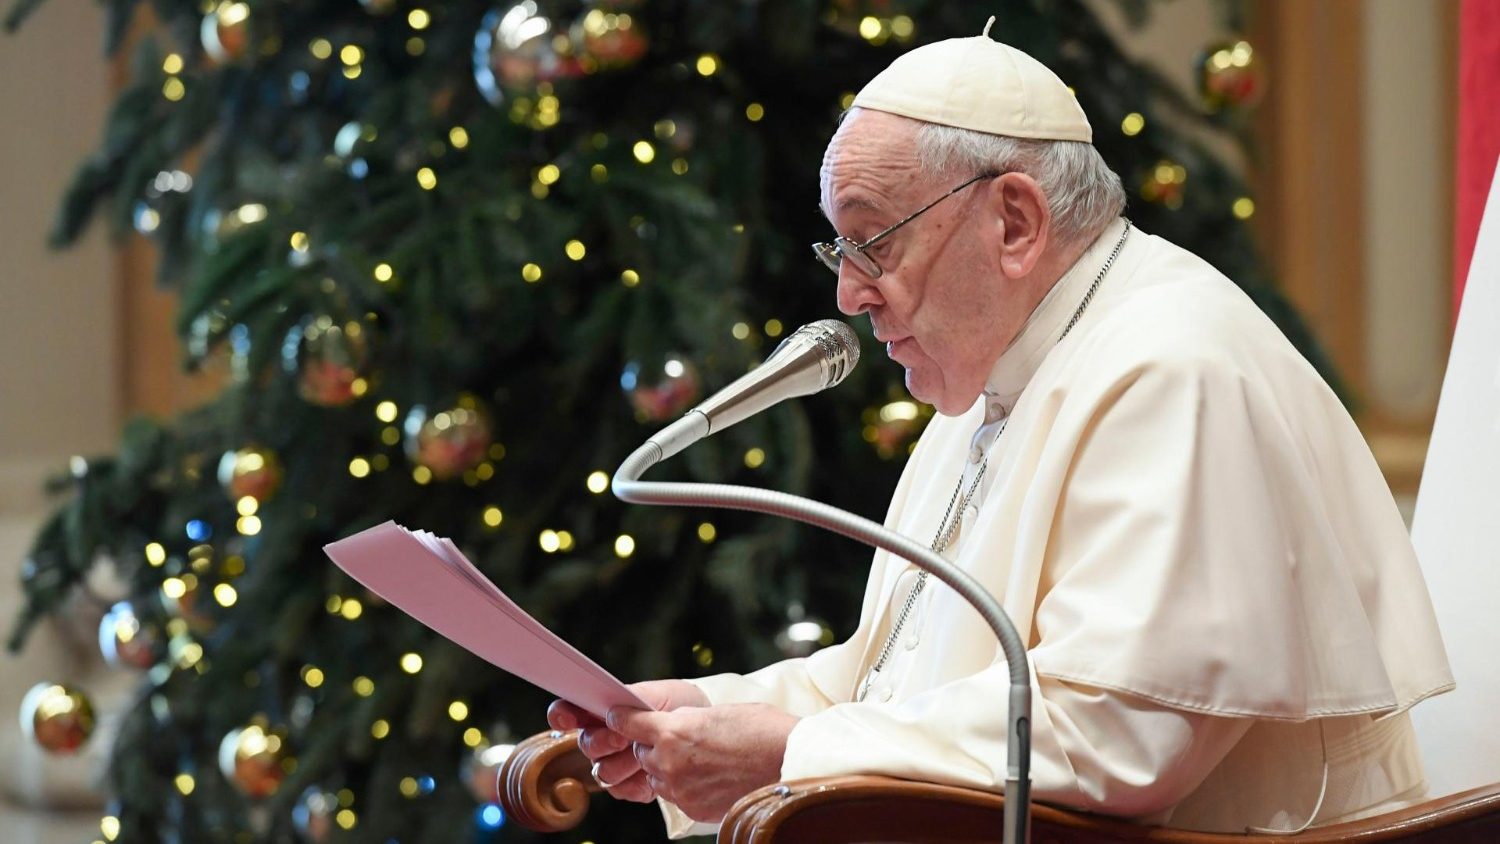 PODCAST: Papežova promluva k římské kurii